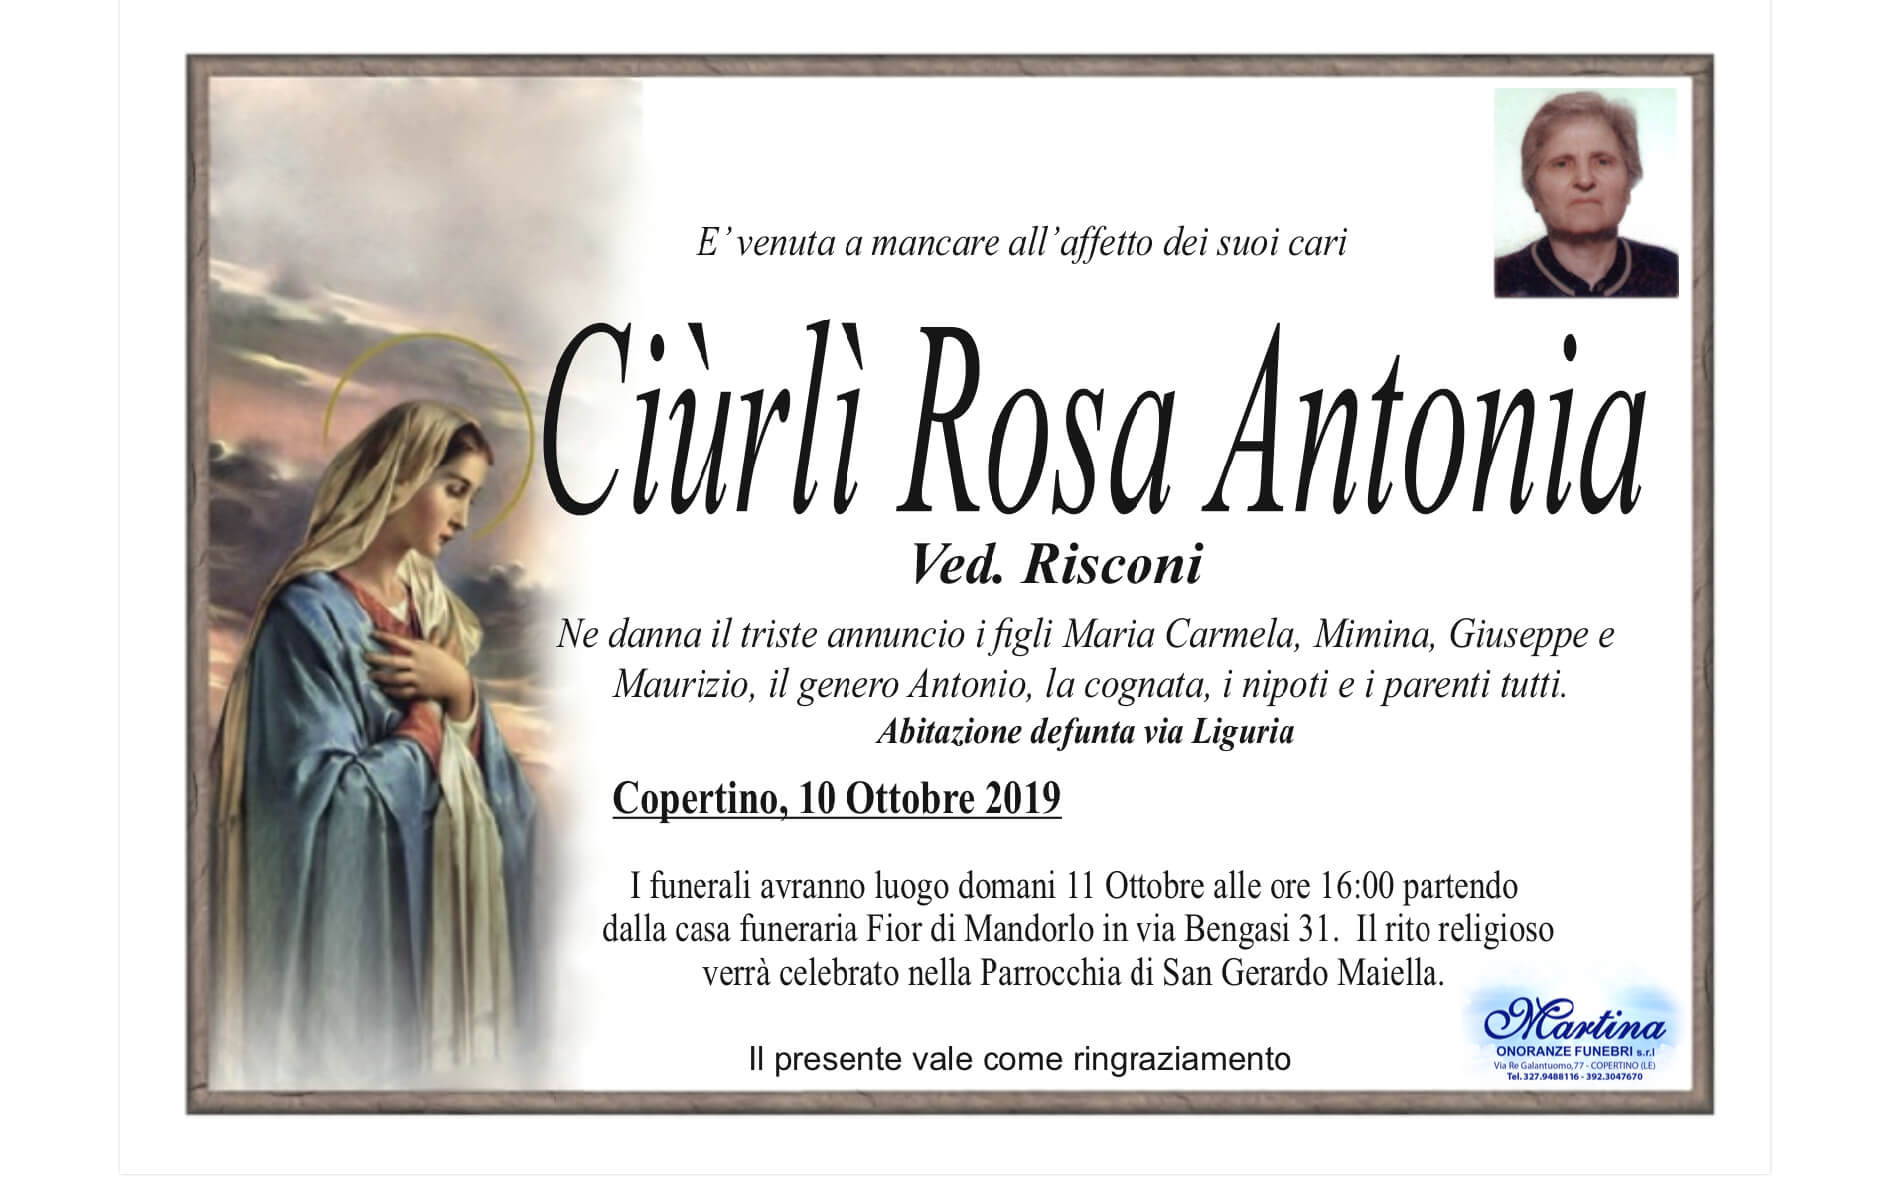 Rosa Antonia Ciùrlì